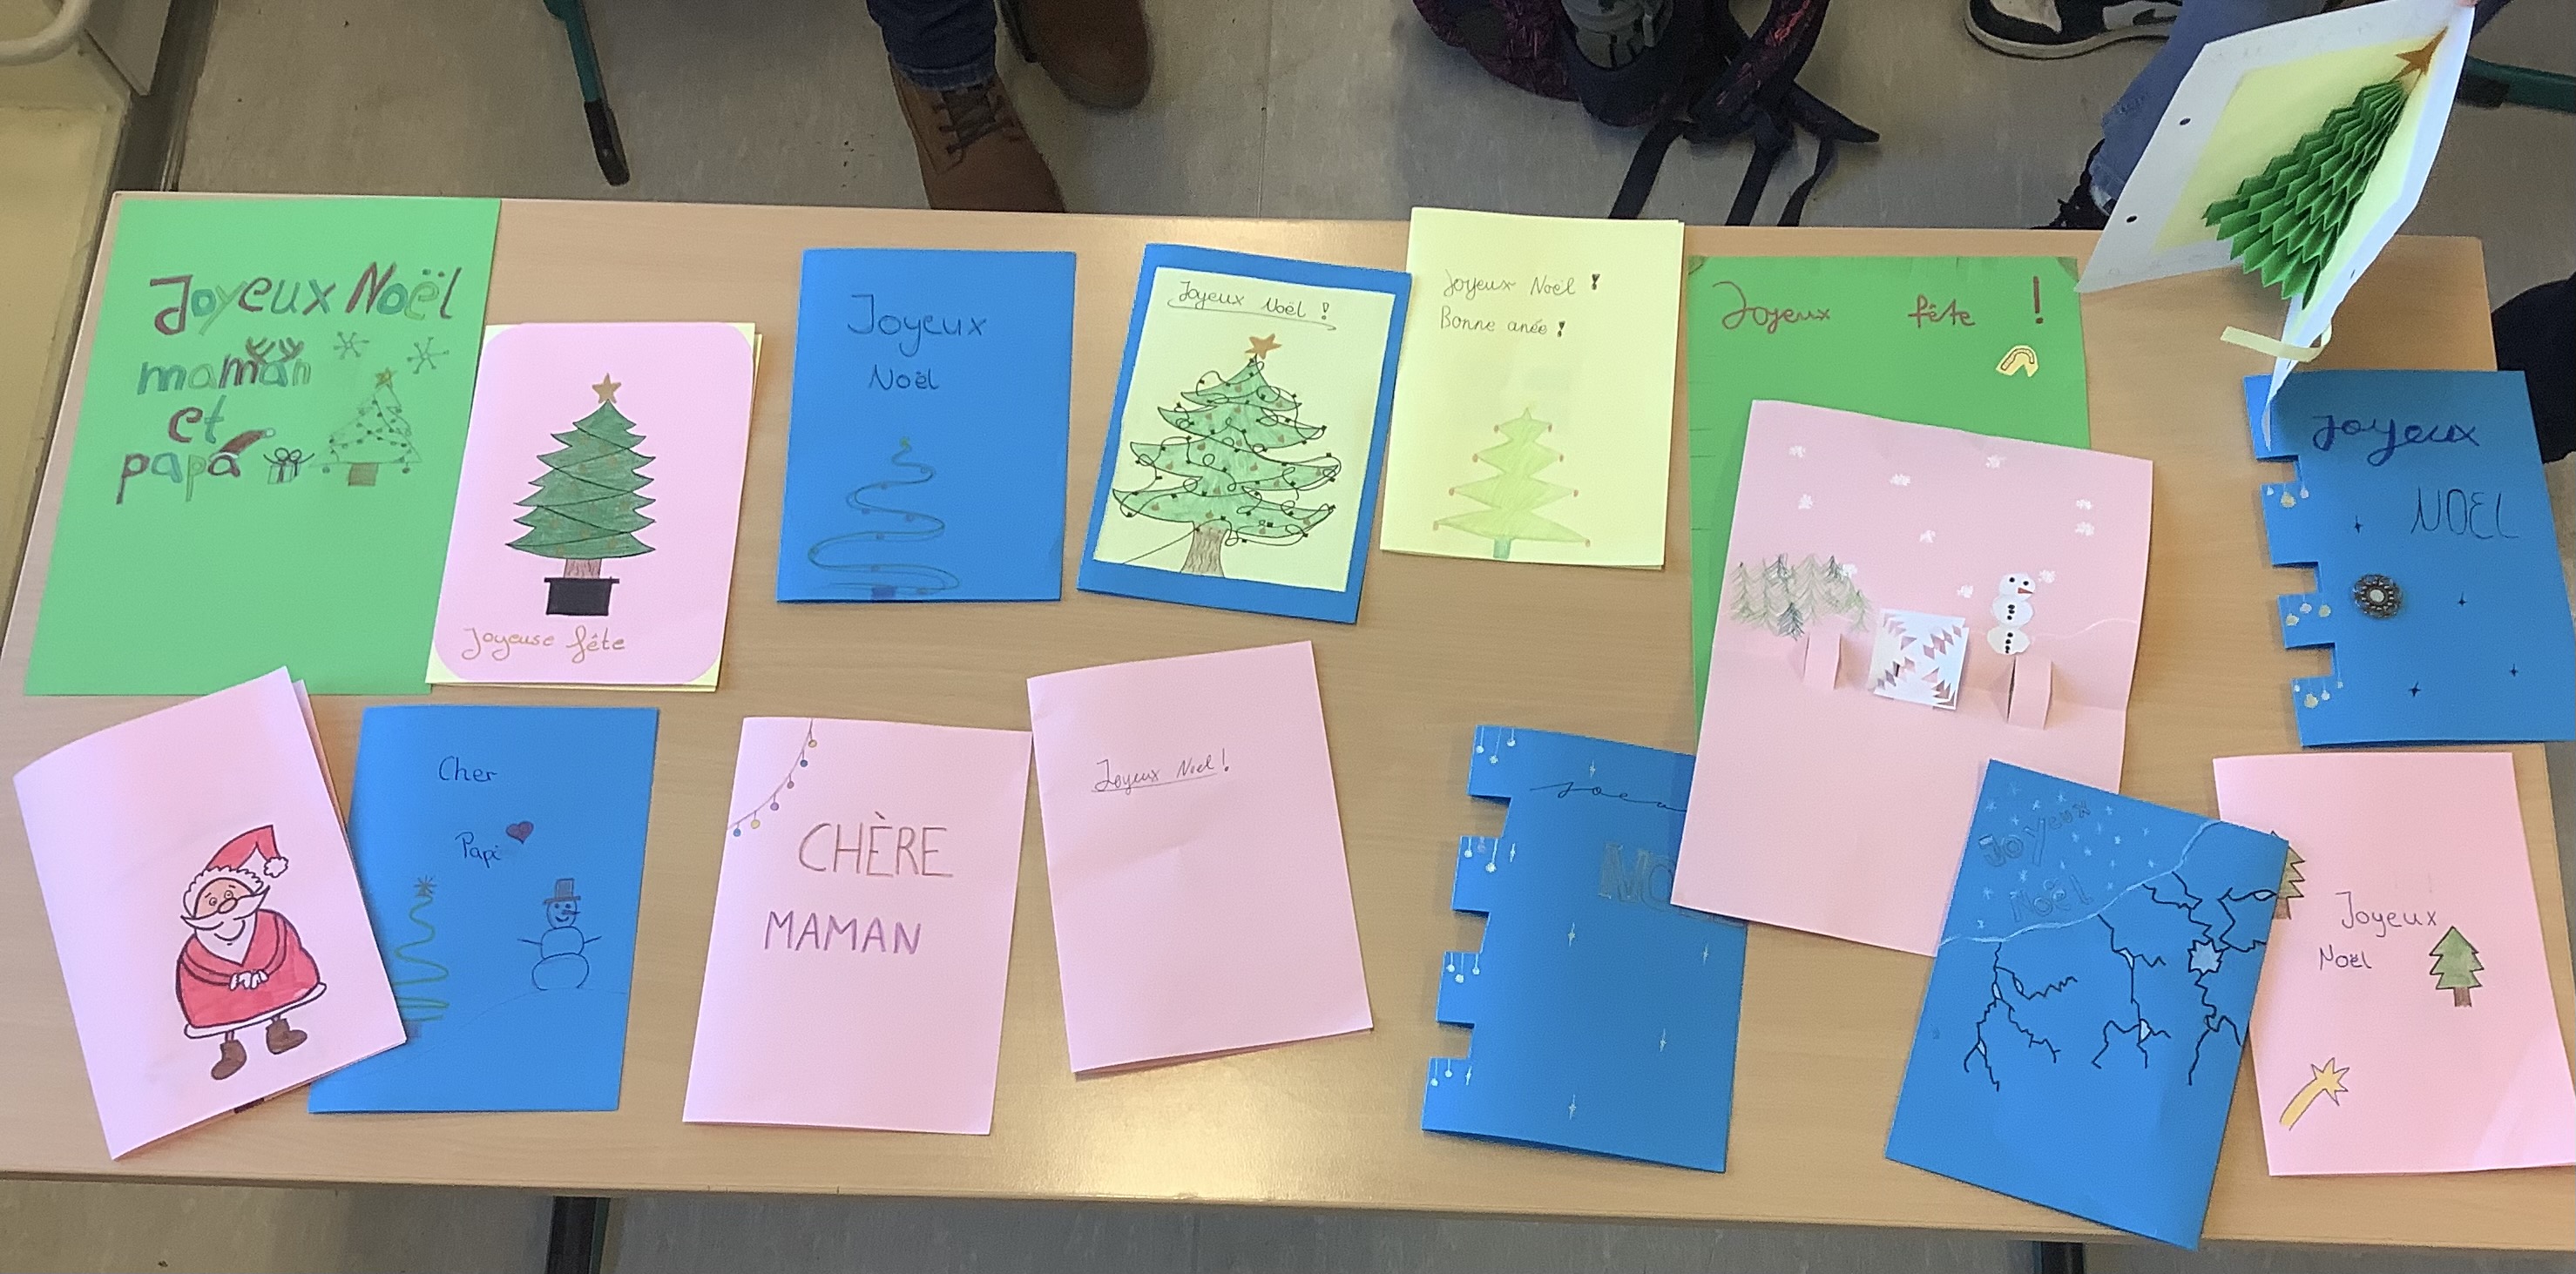 Französischkurs schreibt Weihnachtsgrüße